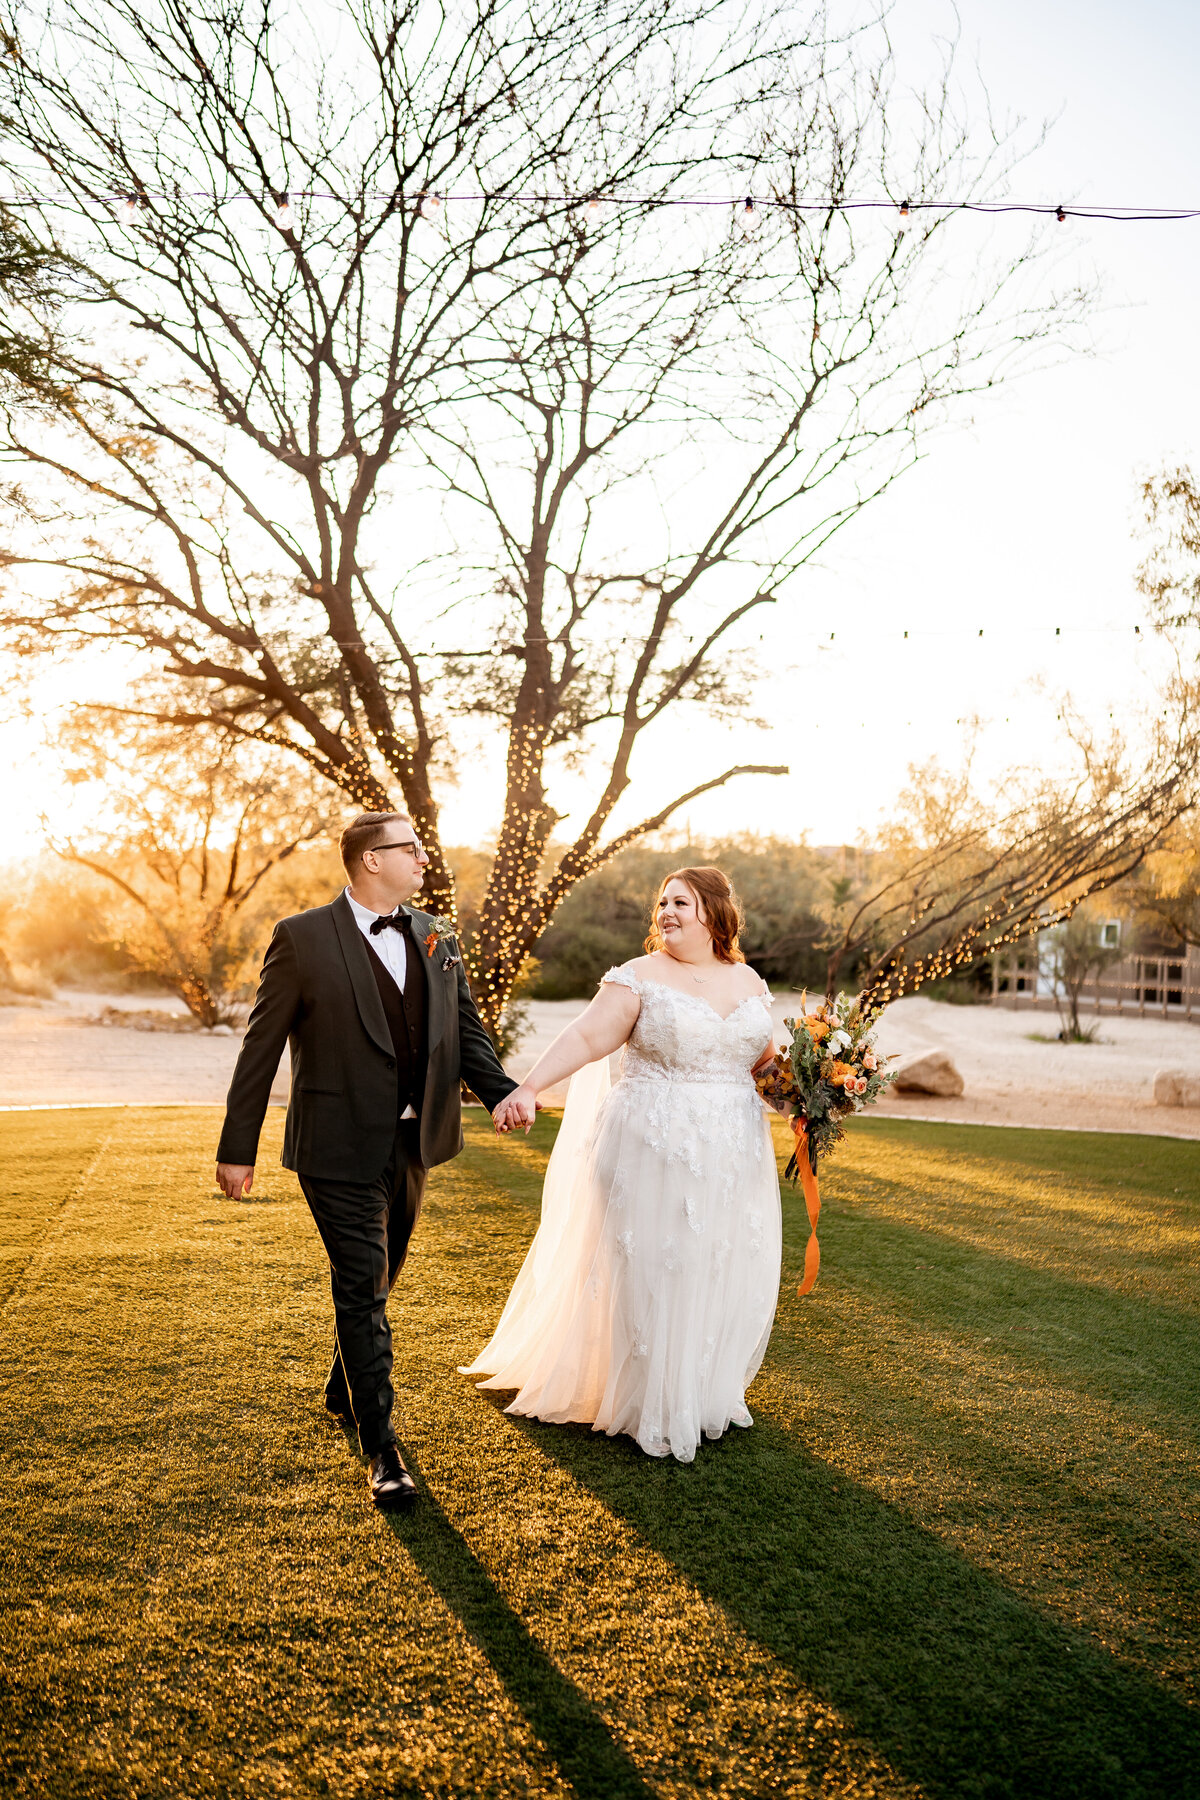 saguaro buttes wedding photos tucson arizona (6)